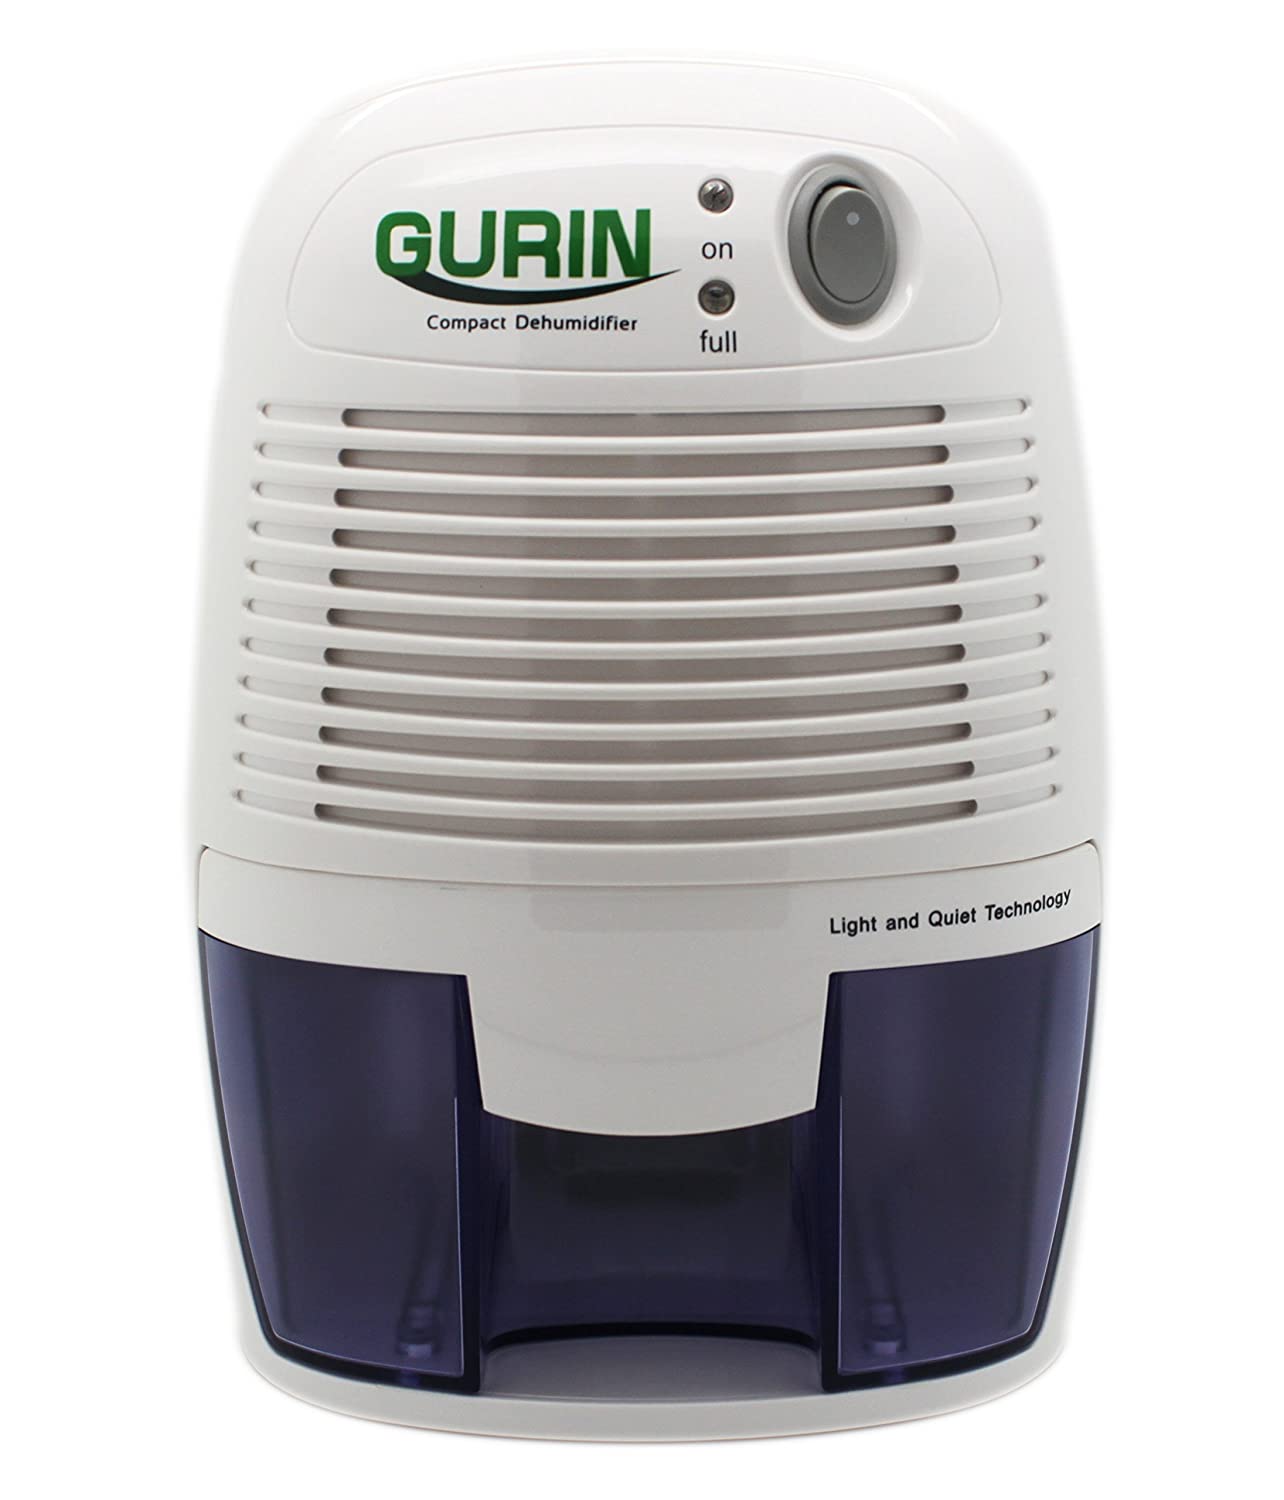 small dehumidifier - Gurin Thermo-Electric Dehumidifier